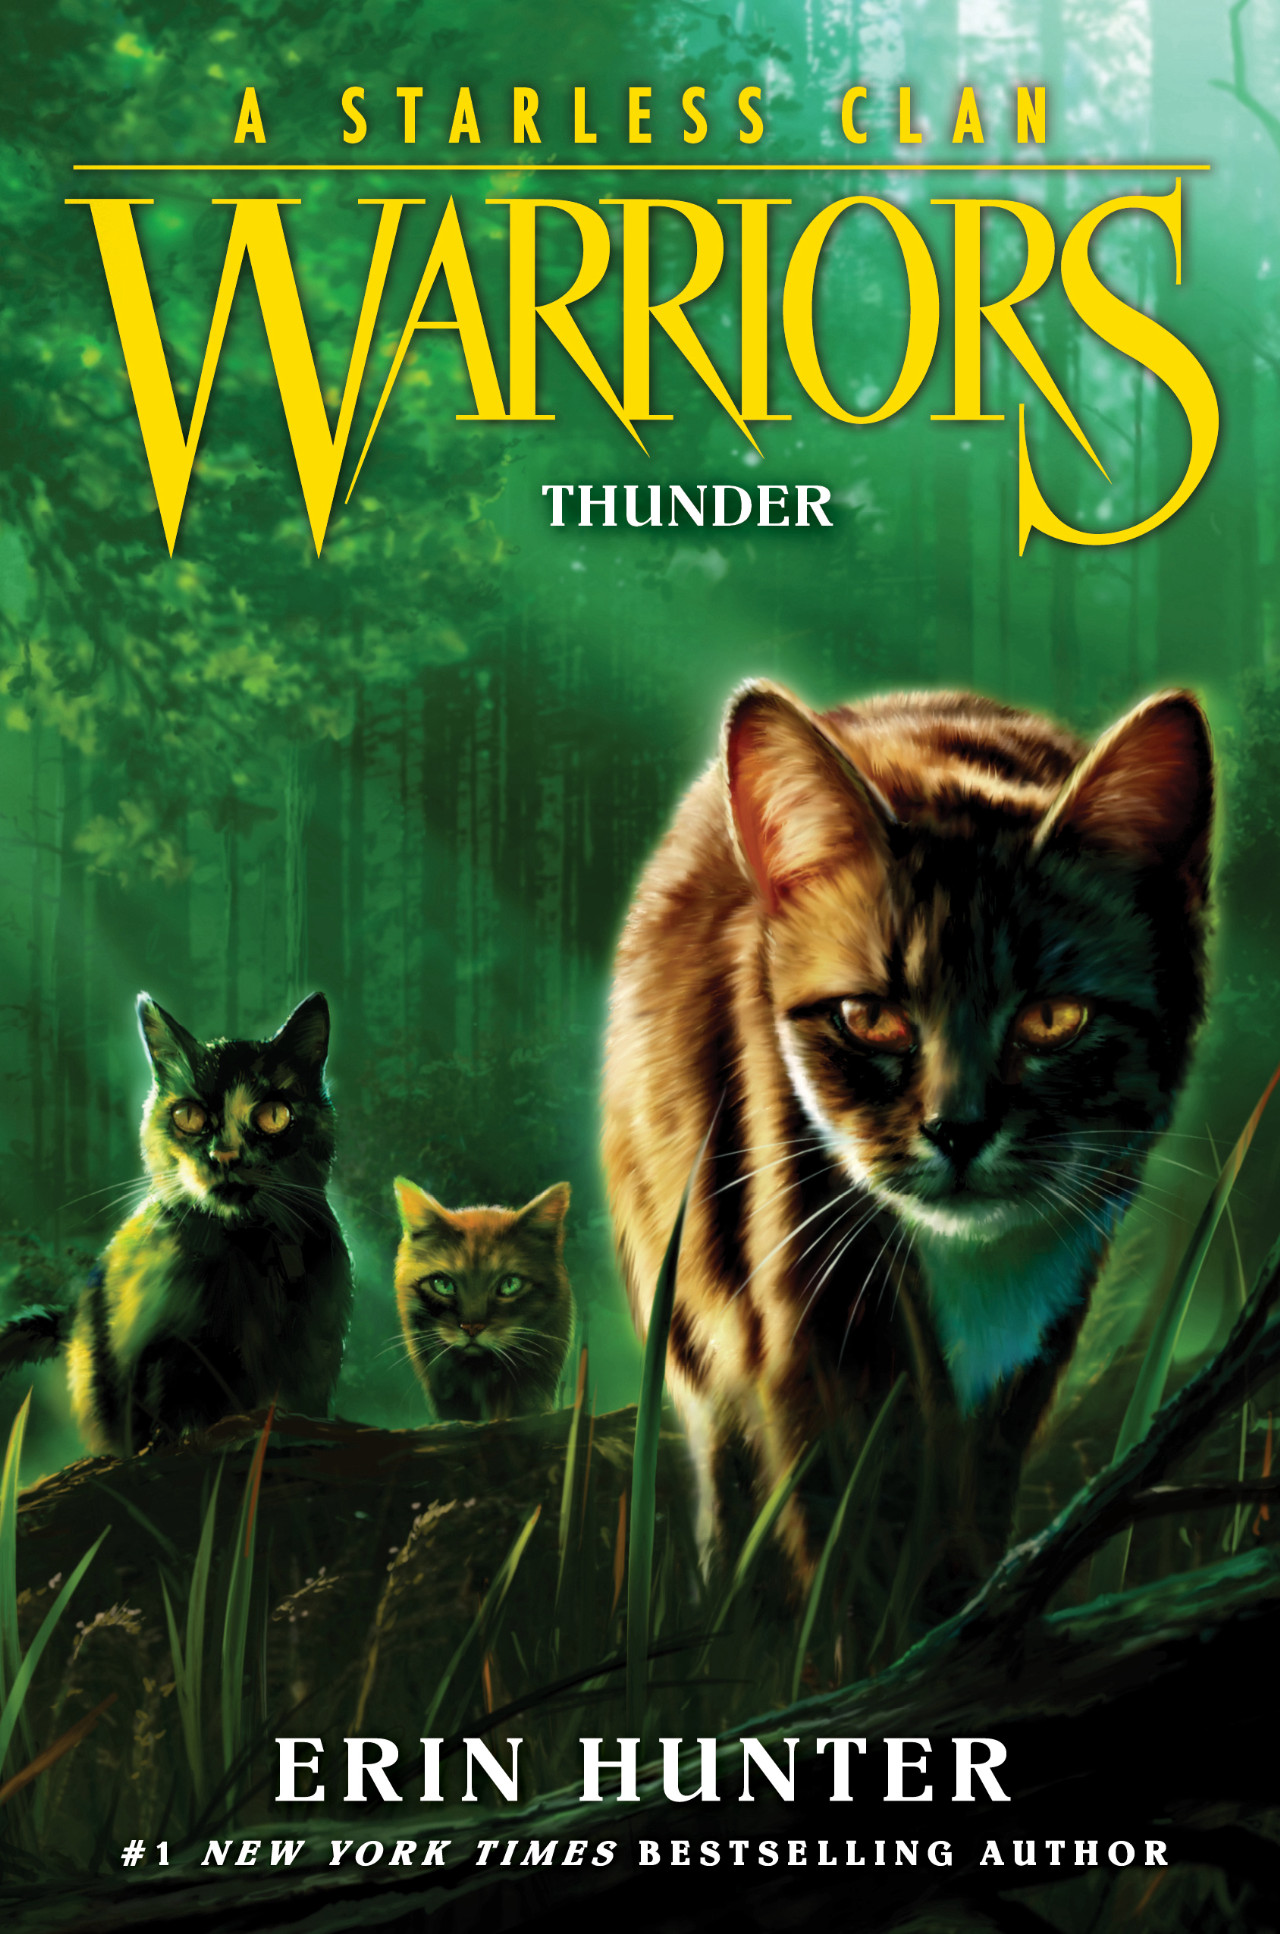 Every Warriors Book : r/WarriorCats